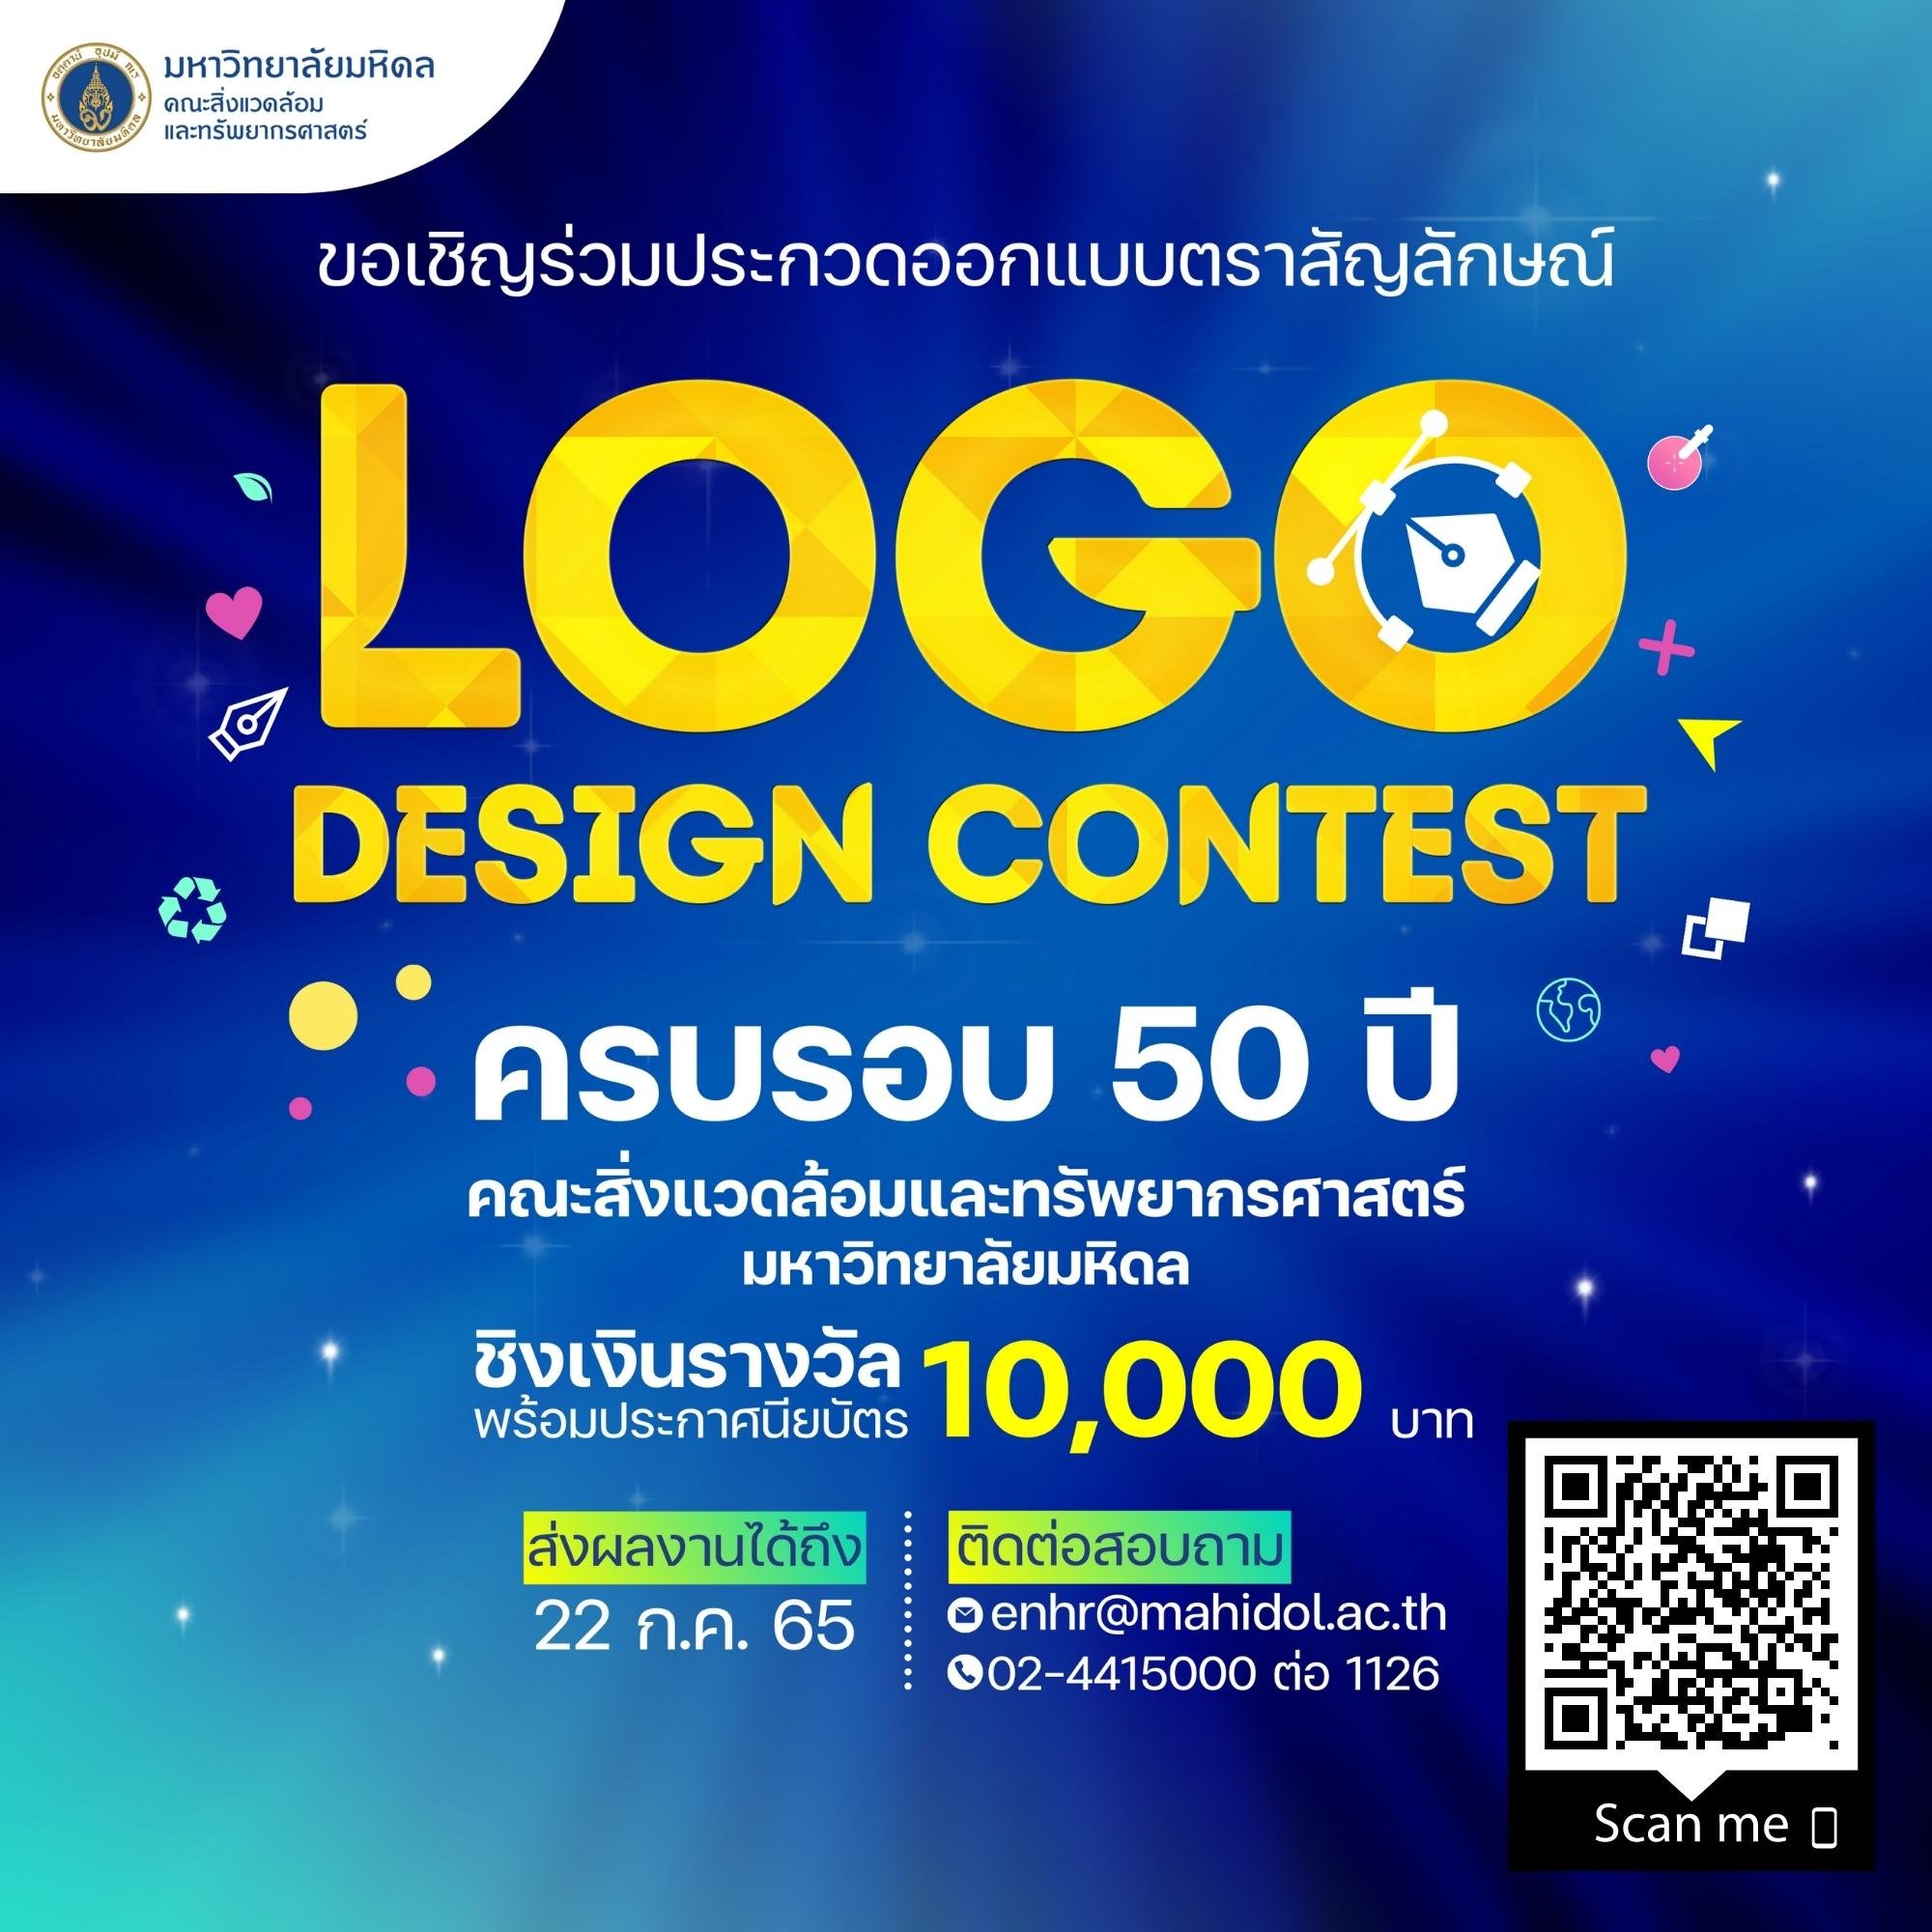 logo contest